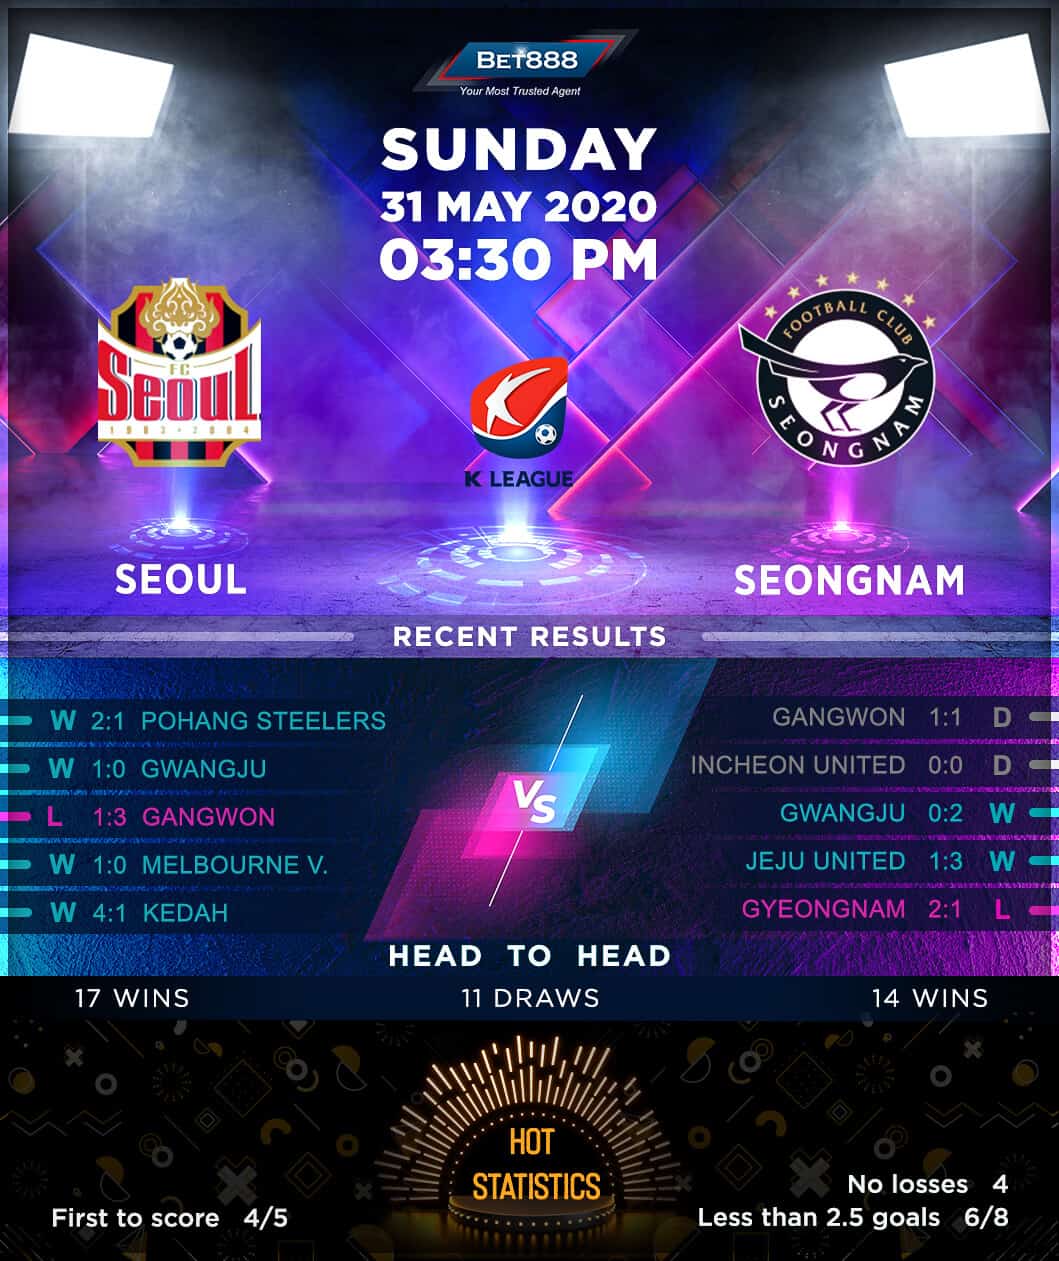 Seoul vs Seongnam 31/05/20